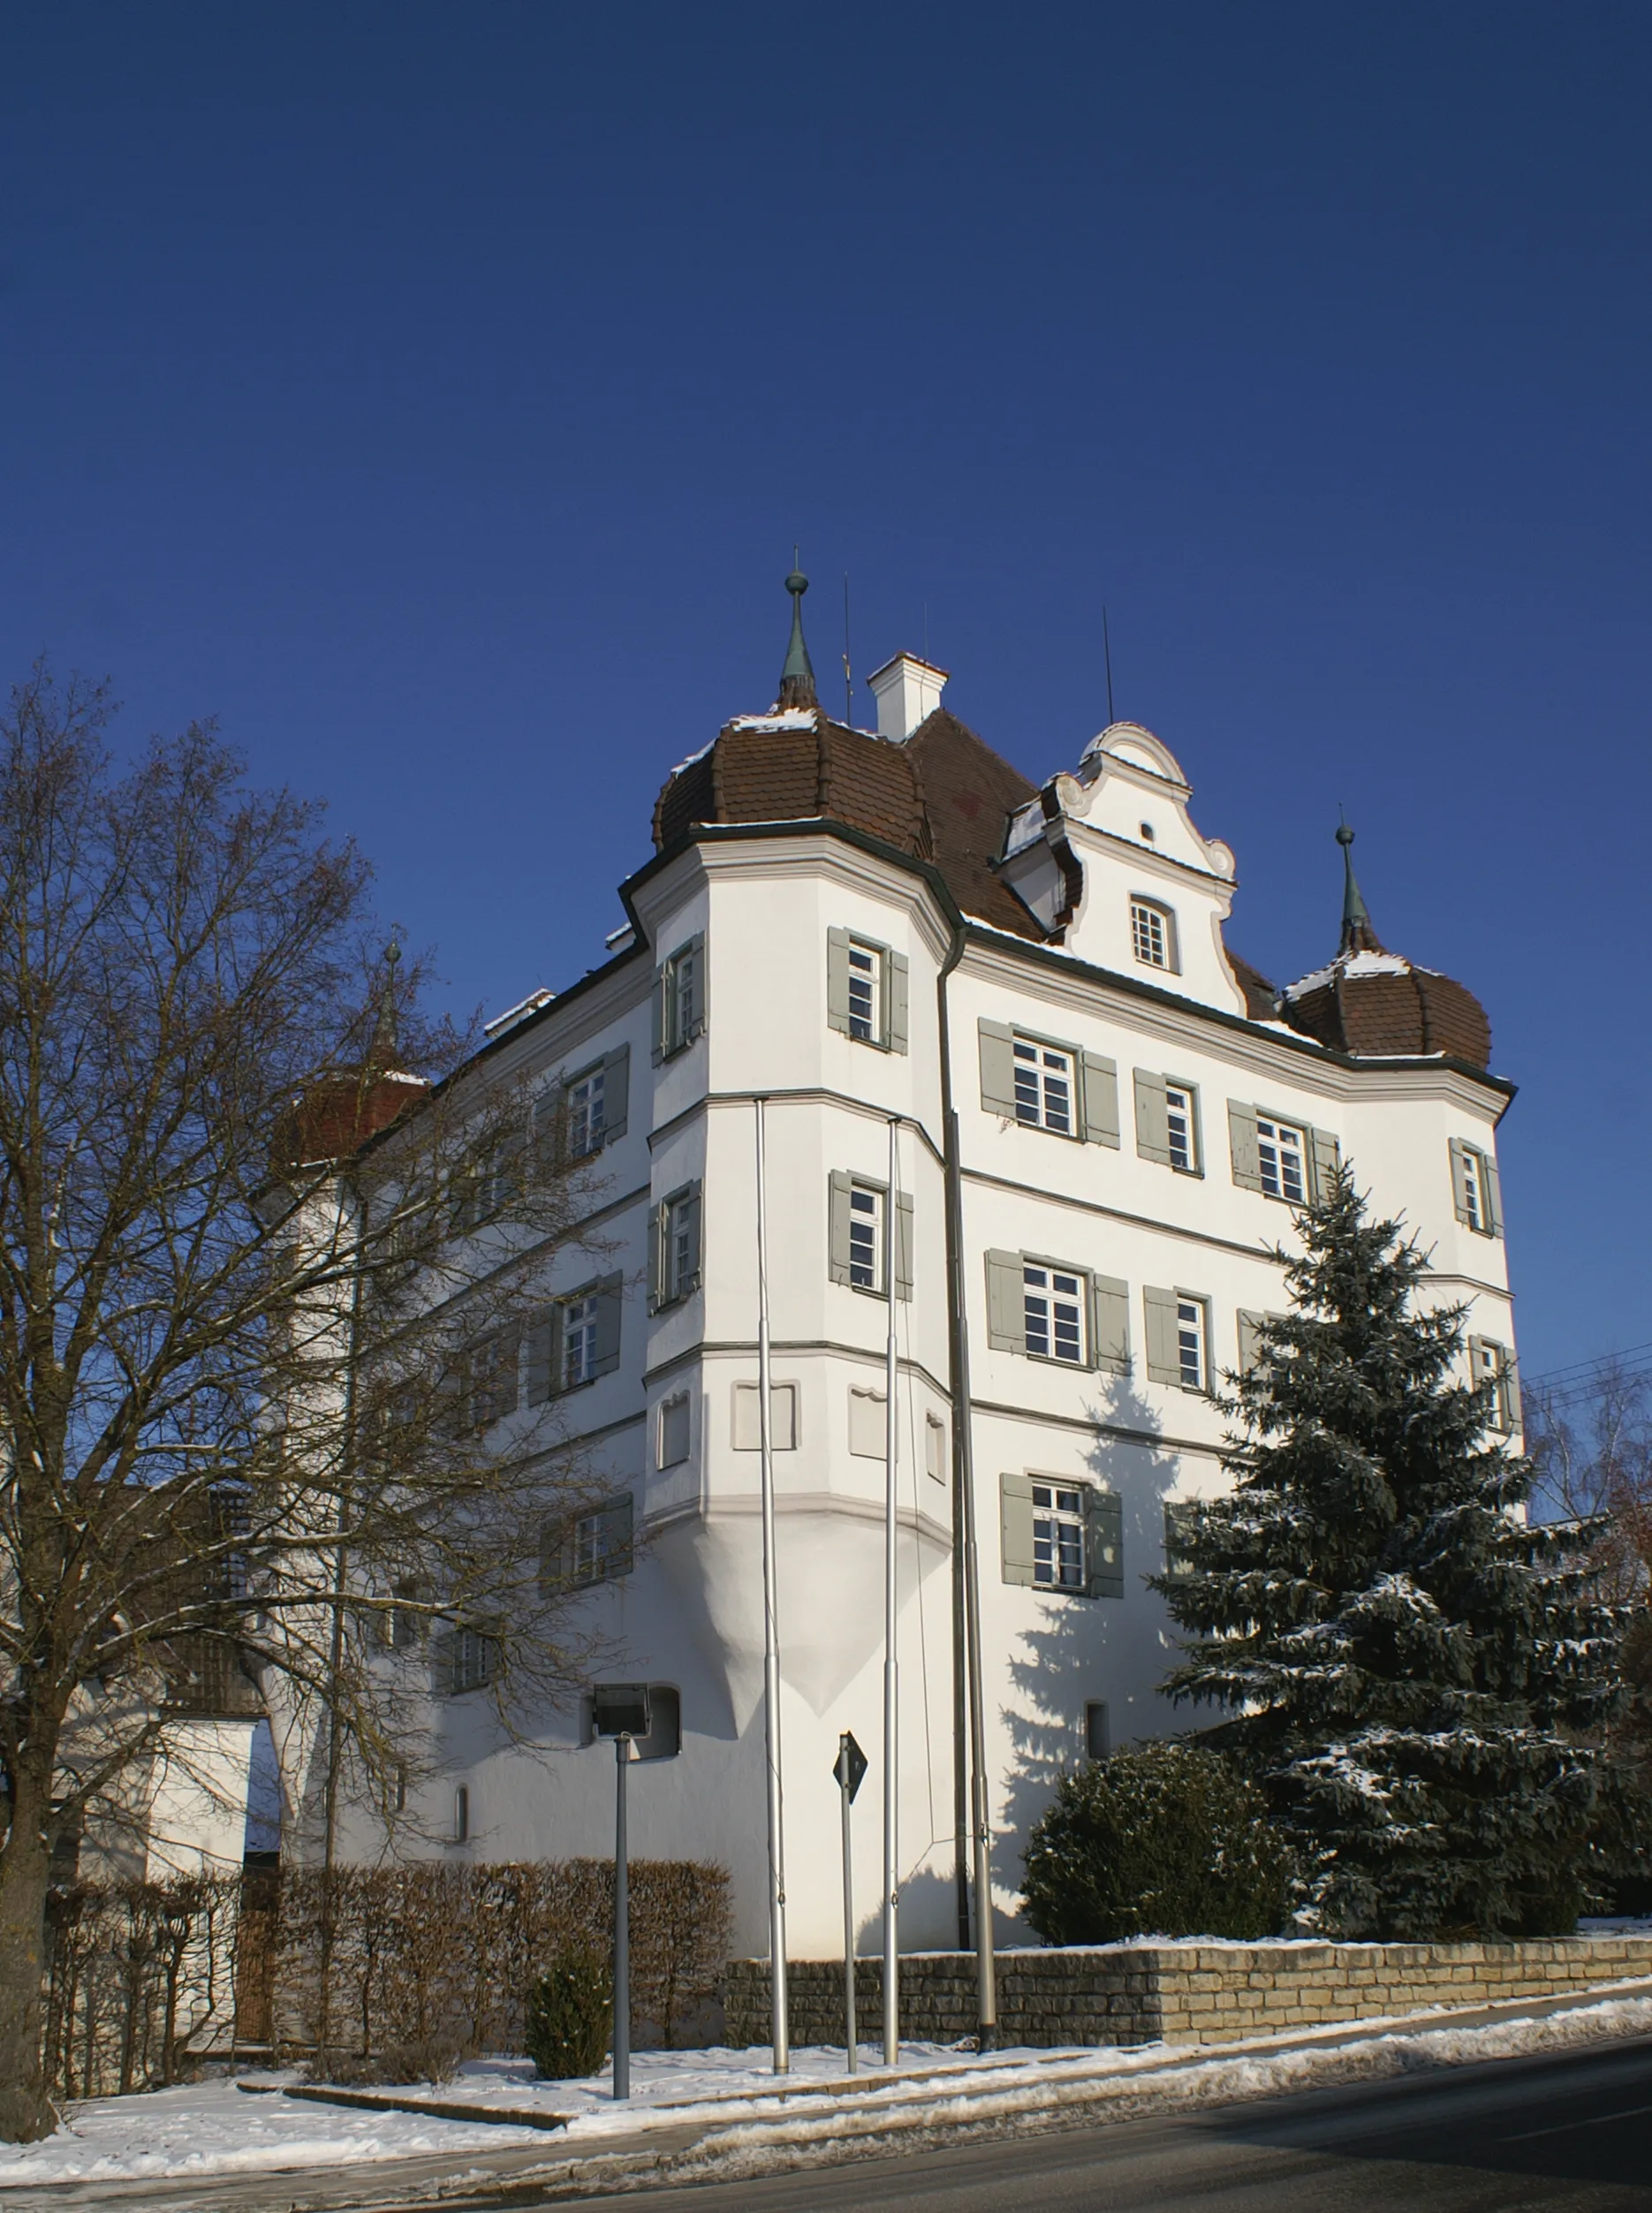 Image of Bernstadt